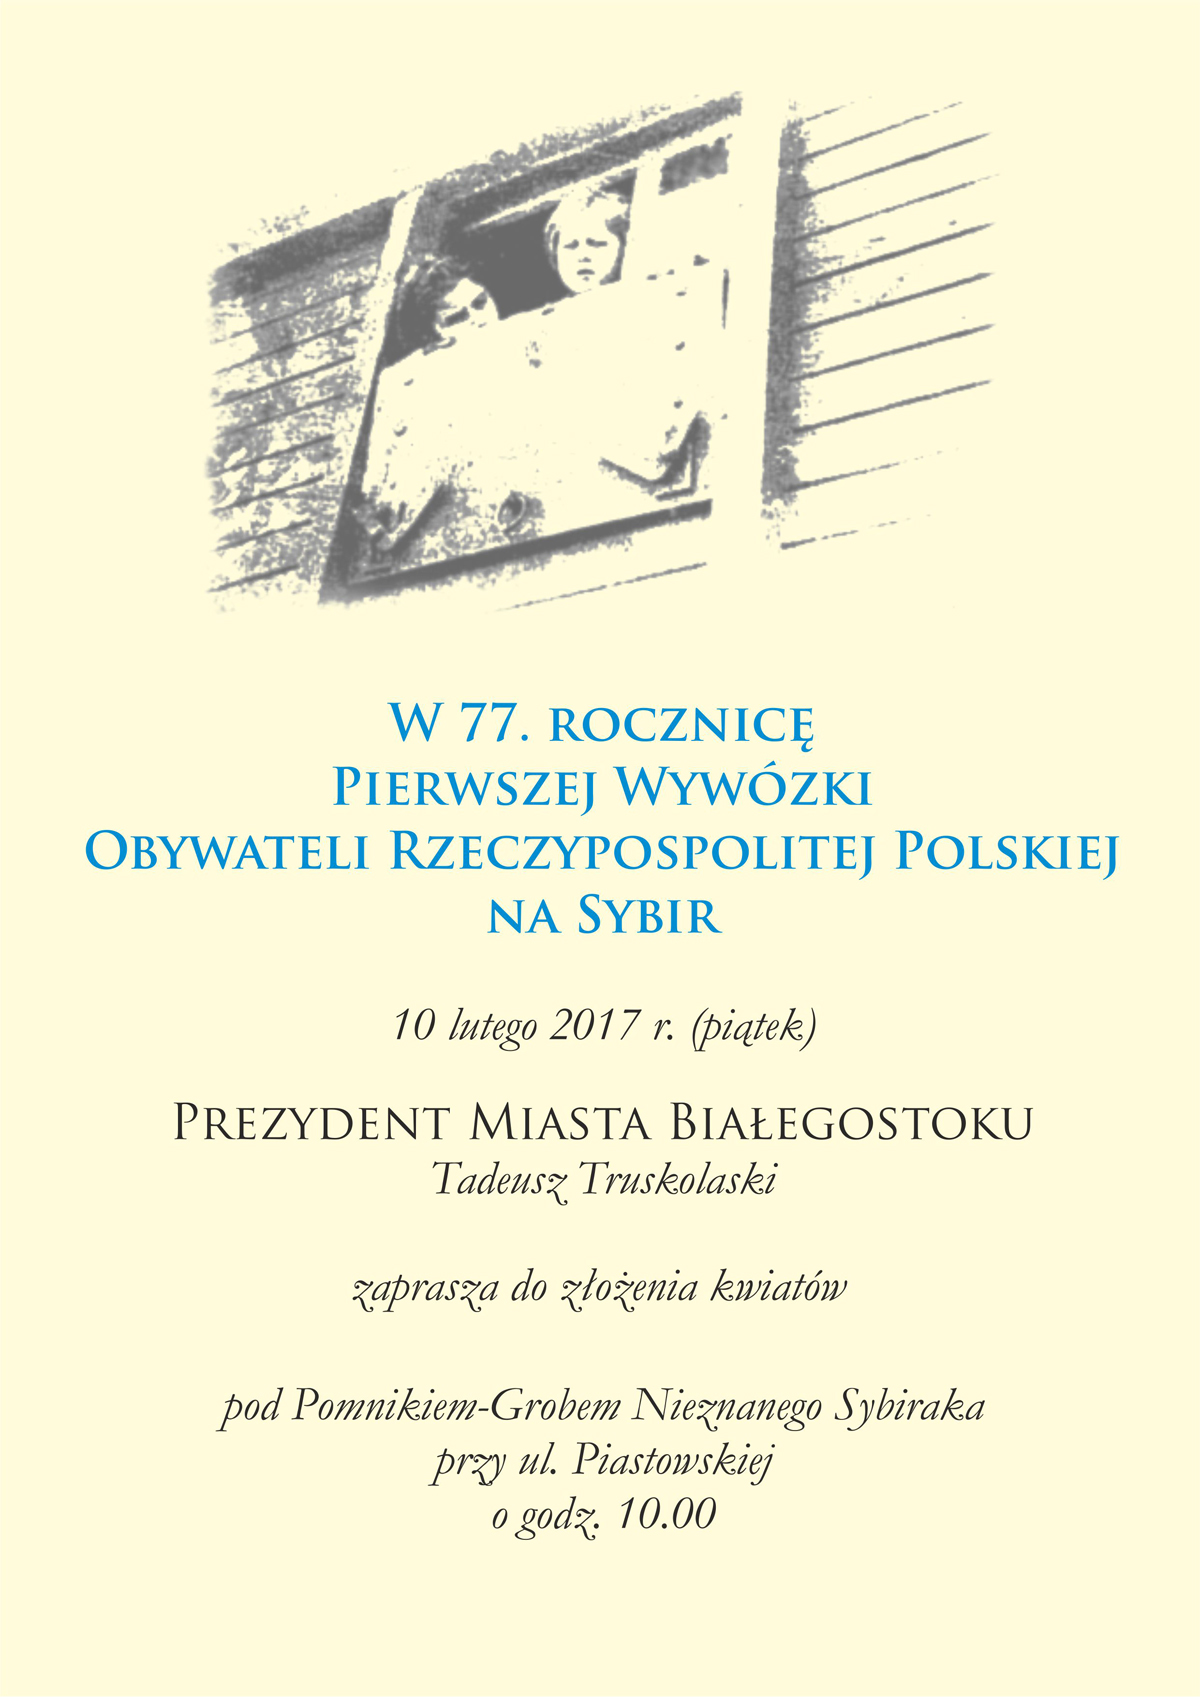 Zaproszenie na uroczystość w 77. rocznicę pierwszej wywózki obywateli Rzeczypospolitej Polski na sybir